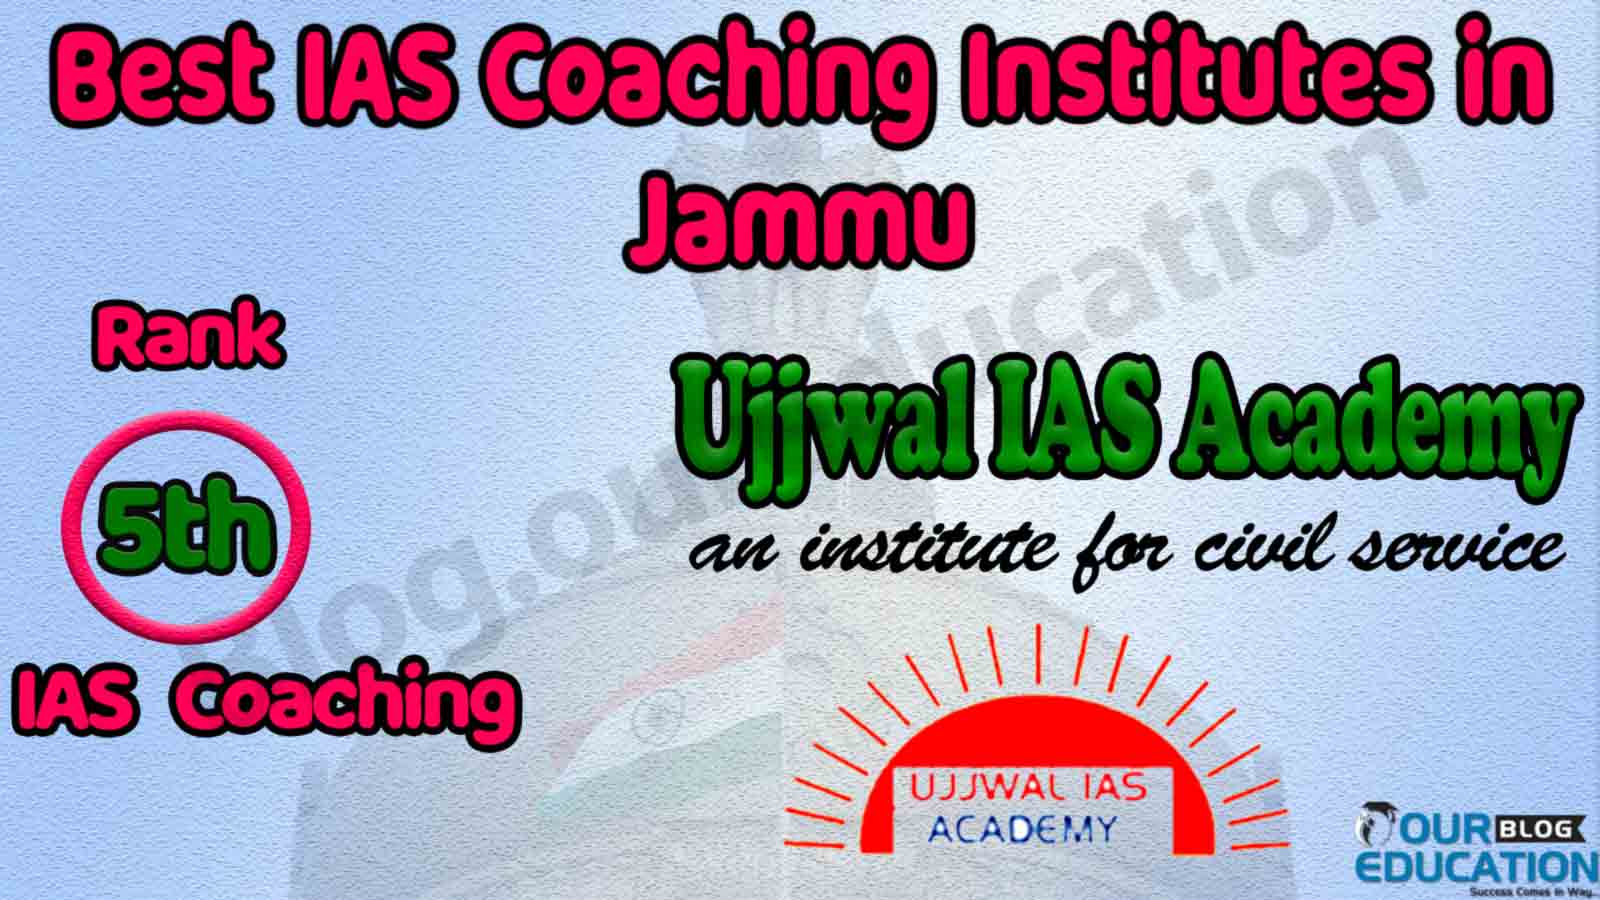 Best Civil Services Coaching in Jammu